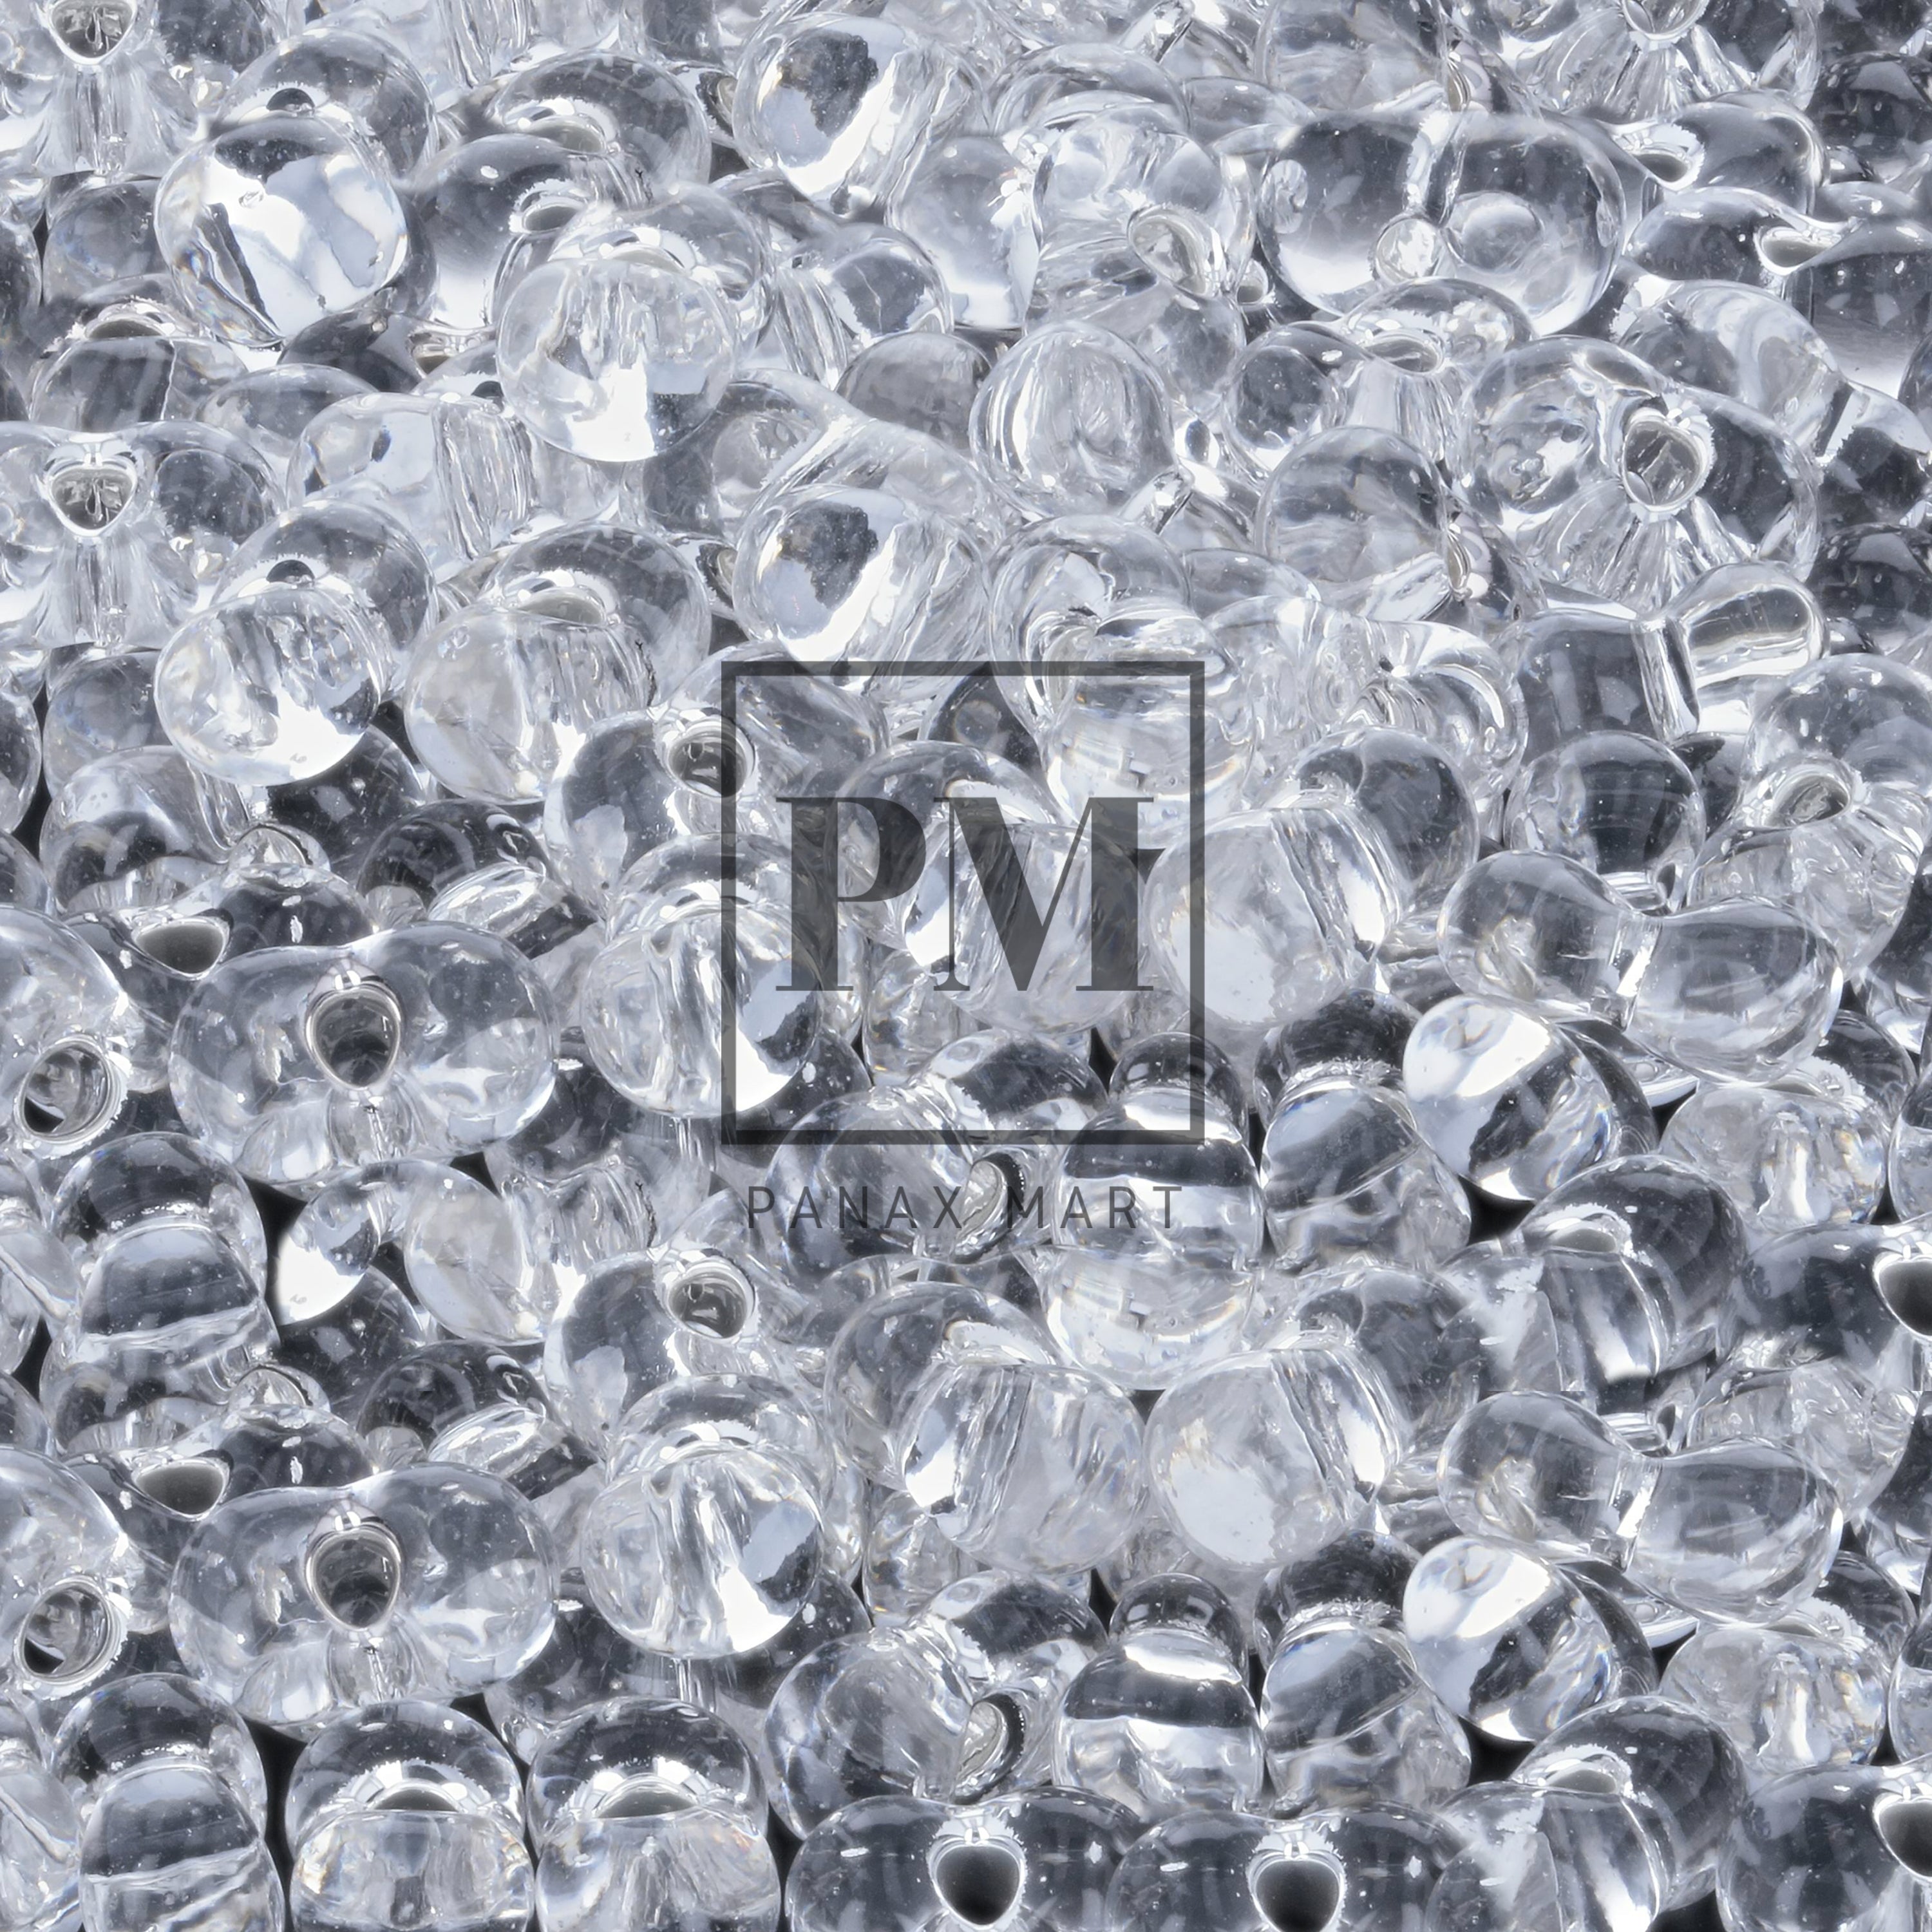 Matsuno Glass Beads (MGB) PEANUT (L) 1034 - Panax Mart